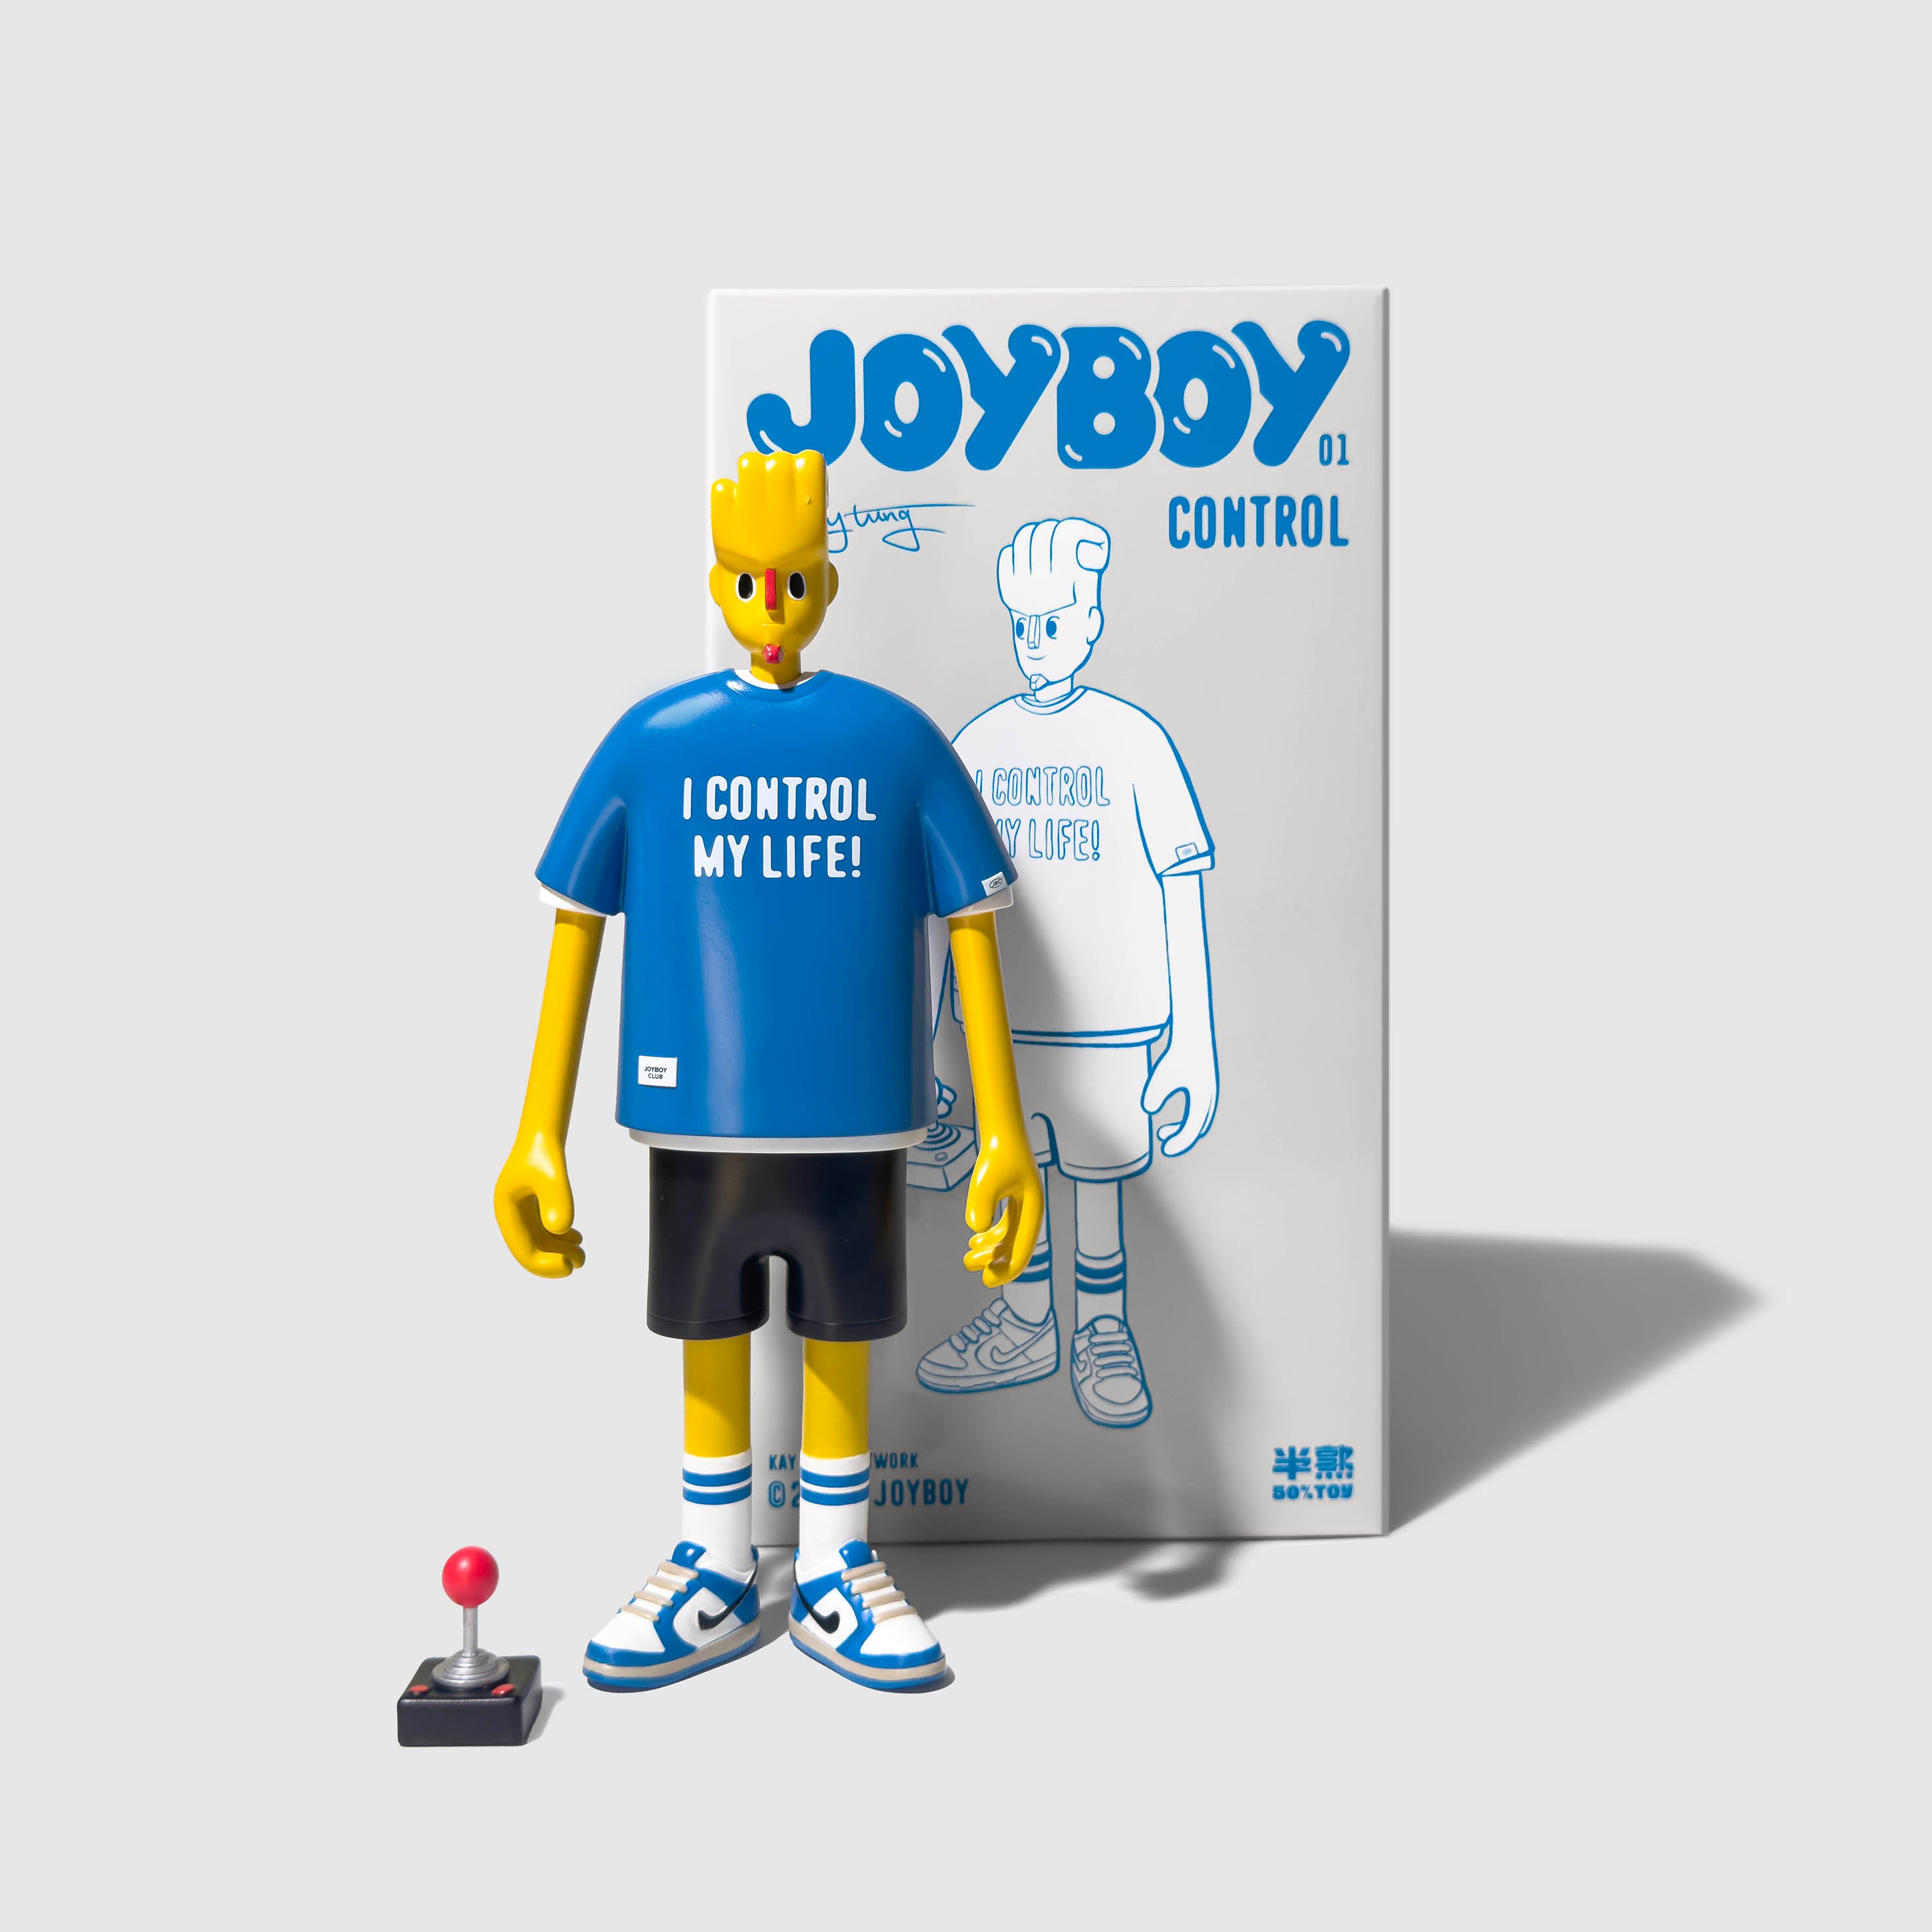 Joyboy “CONTROL”